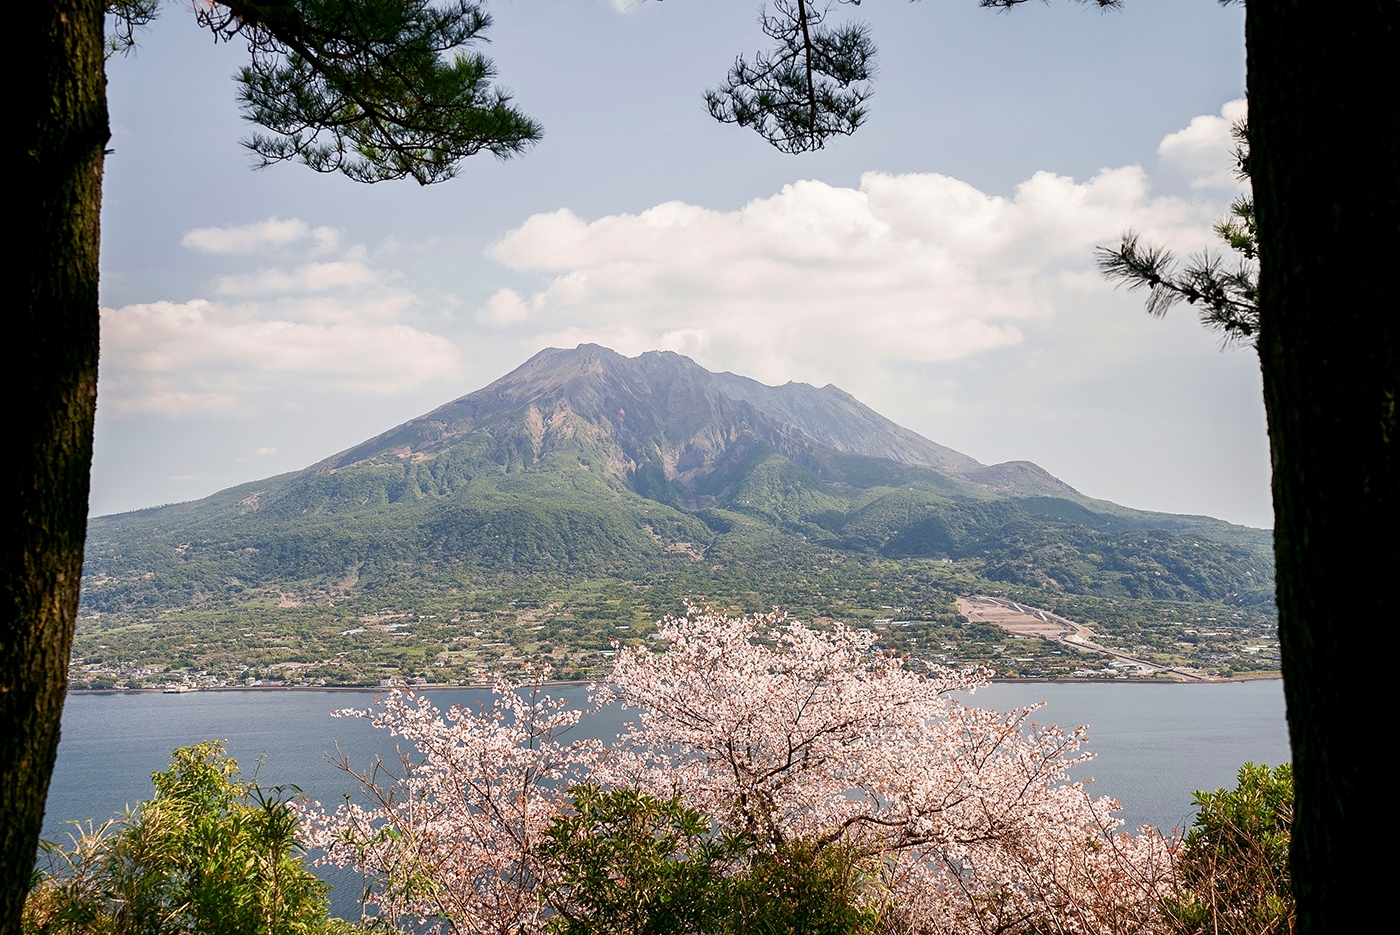 Der Berg Sakurajima in Kagoshima ist ein Schichtvulkan, der für seine atemberaubende Schönheit bekannt ist, besonders im Frühling